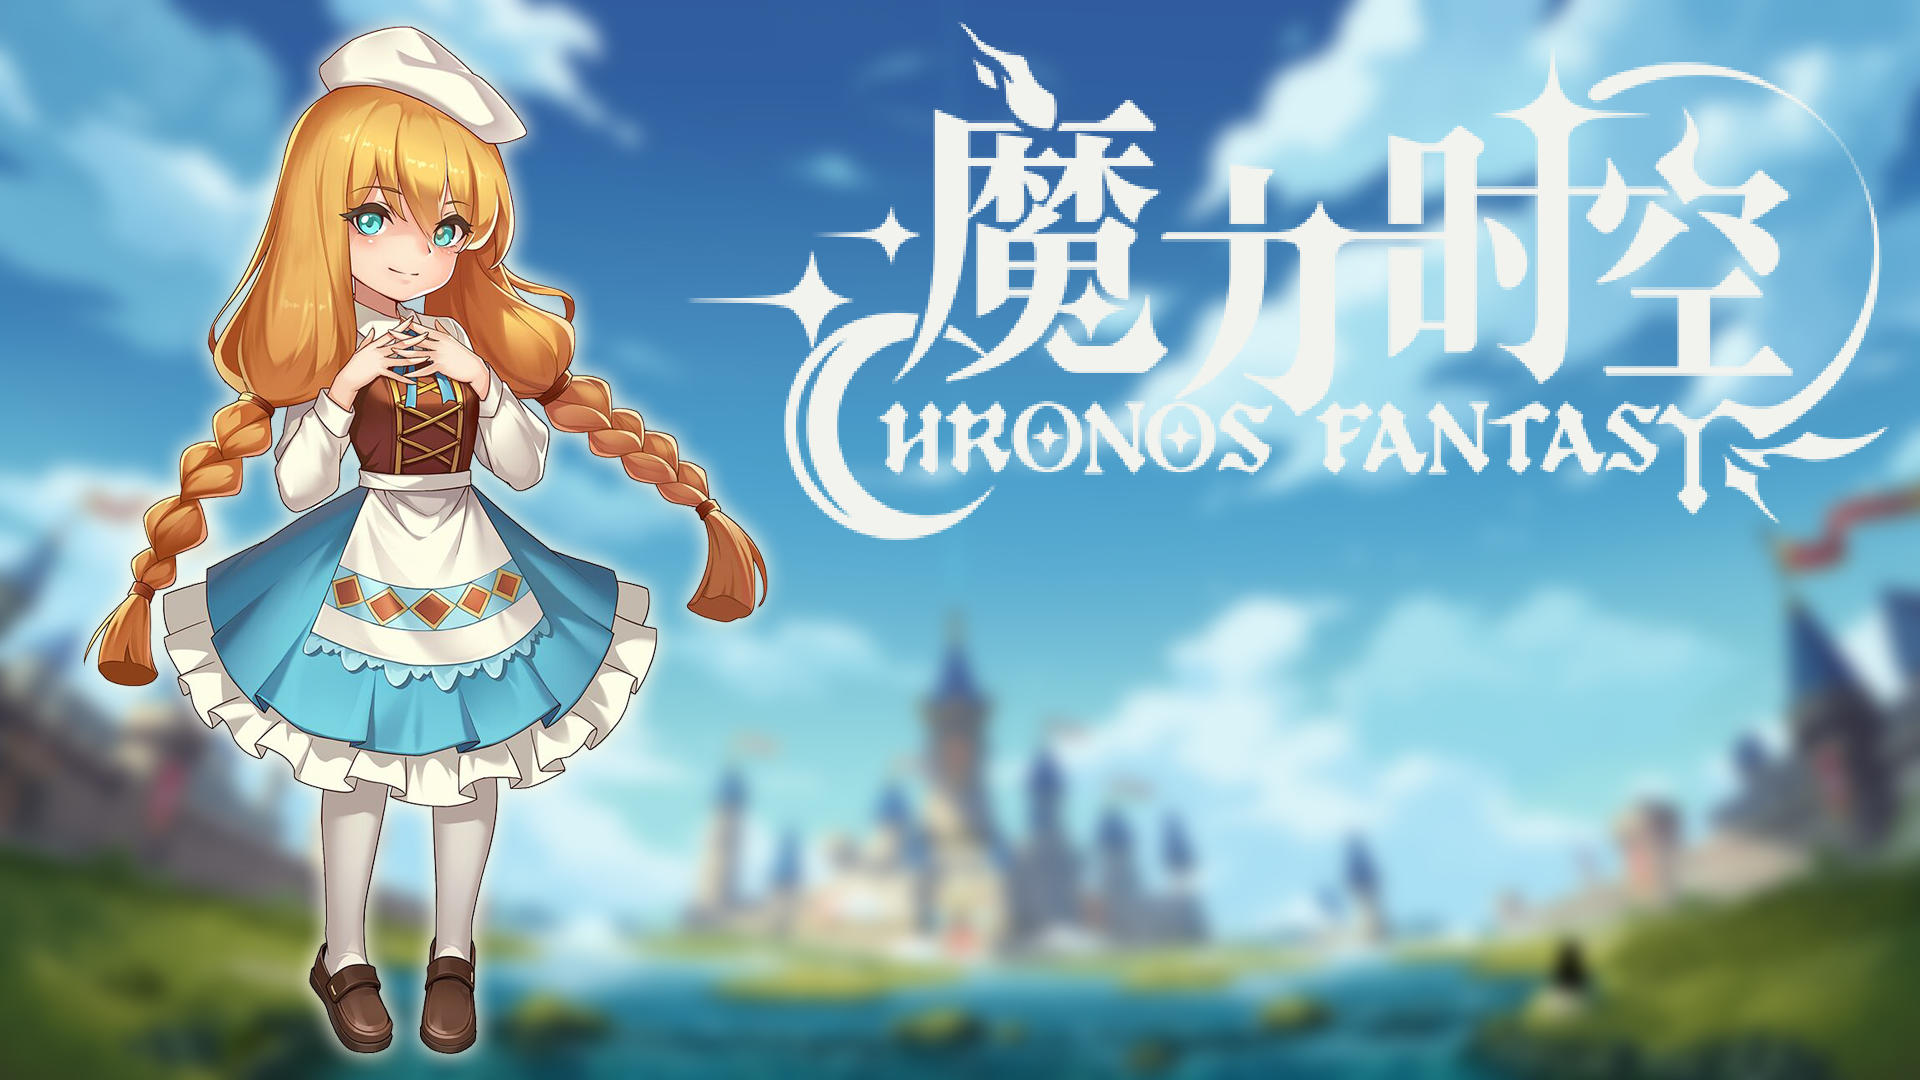 Banner of Fantasi Kronos 